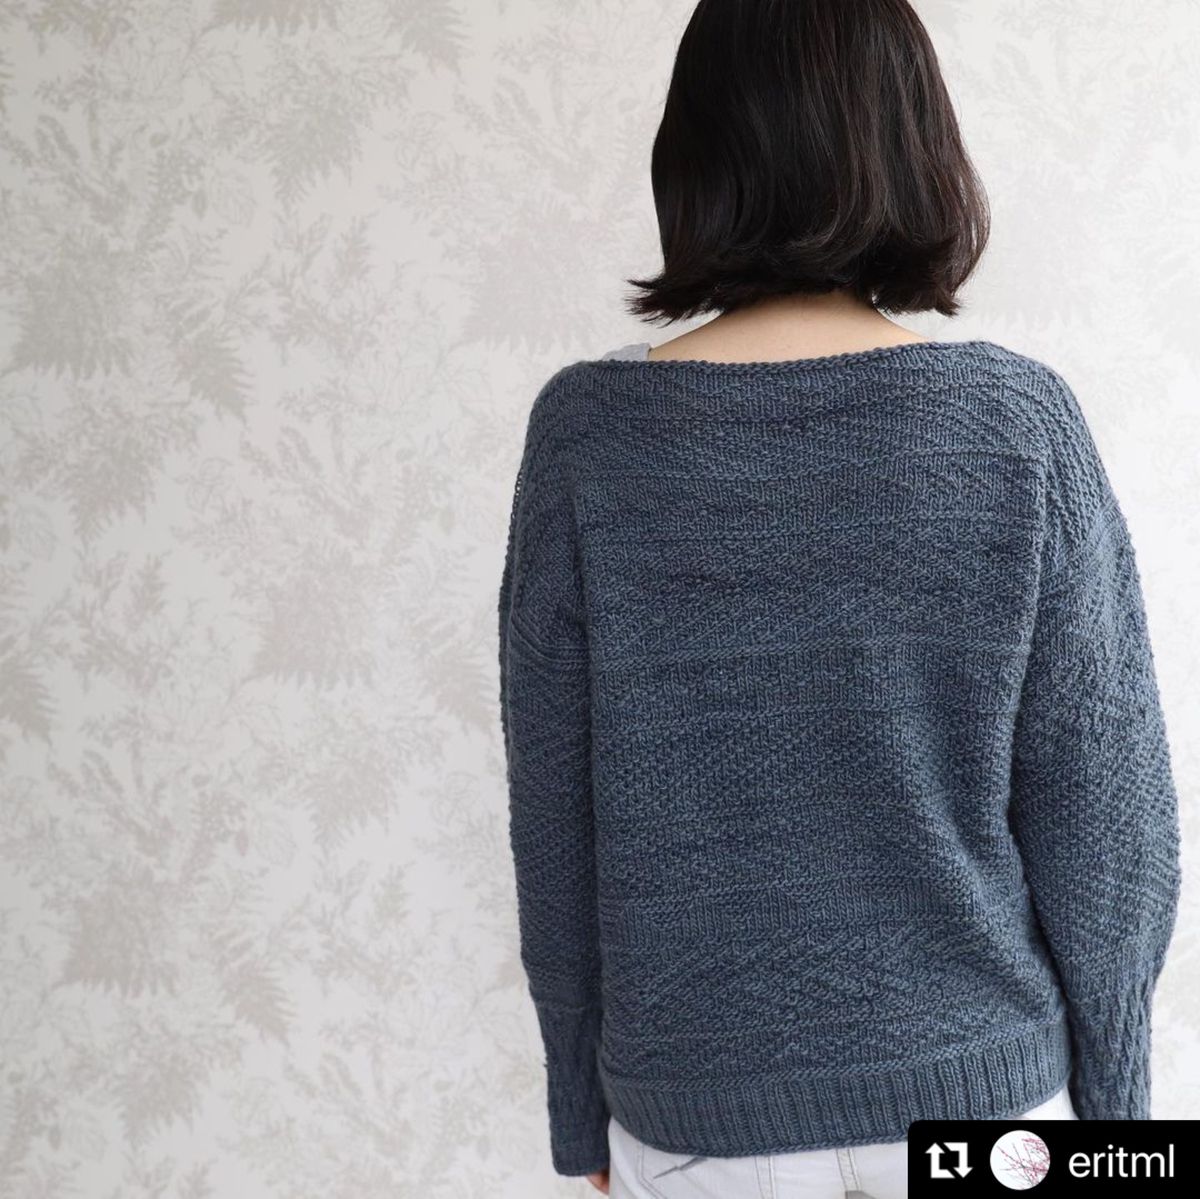 【設計師合作材料包】材料包預購- MARINAI Sweater by Eri Shimizu